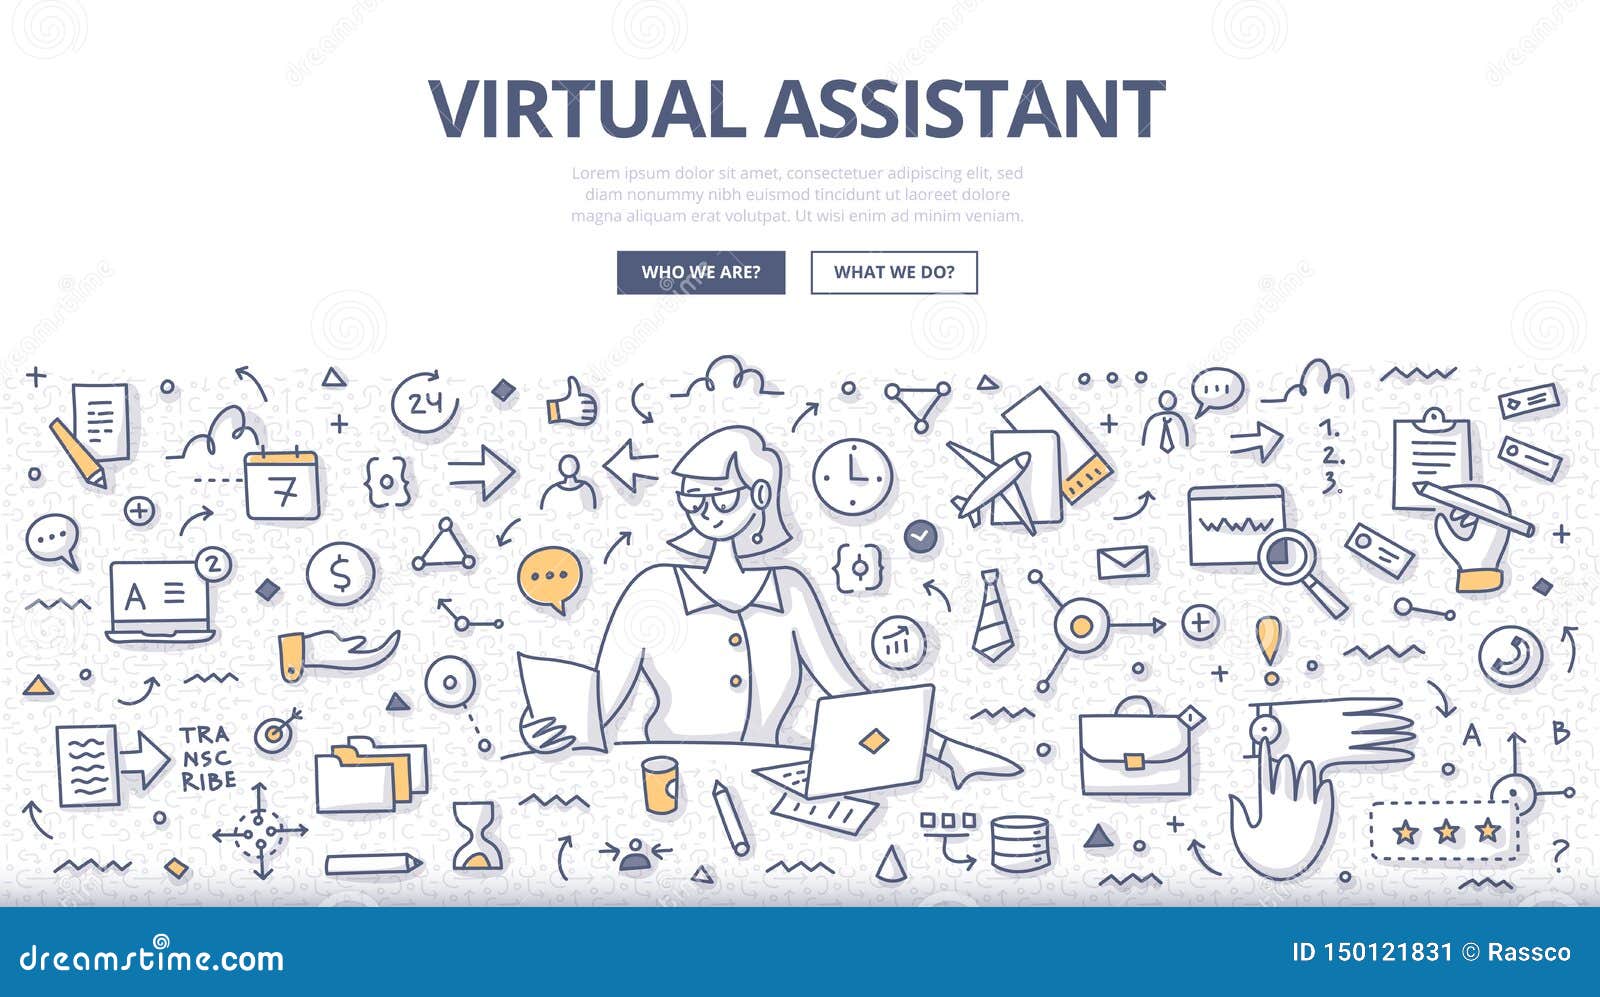 virtual assistant doodle concept